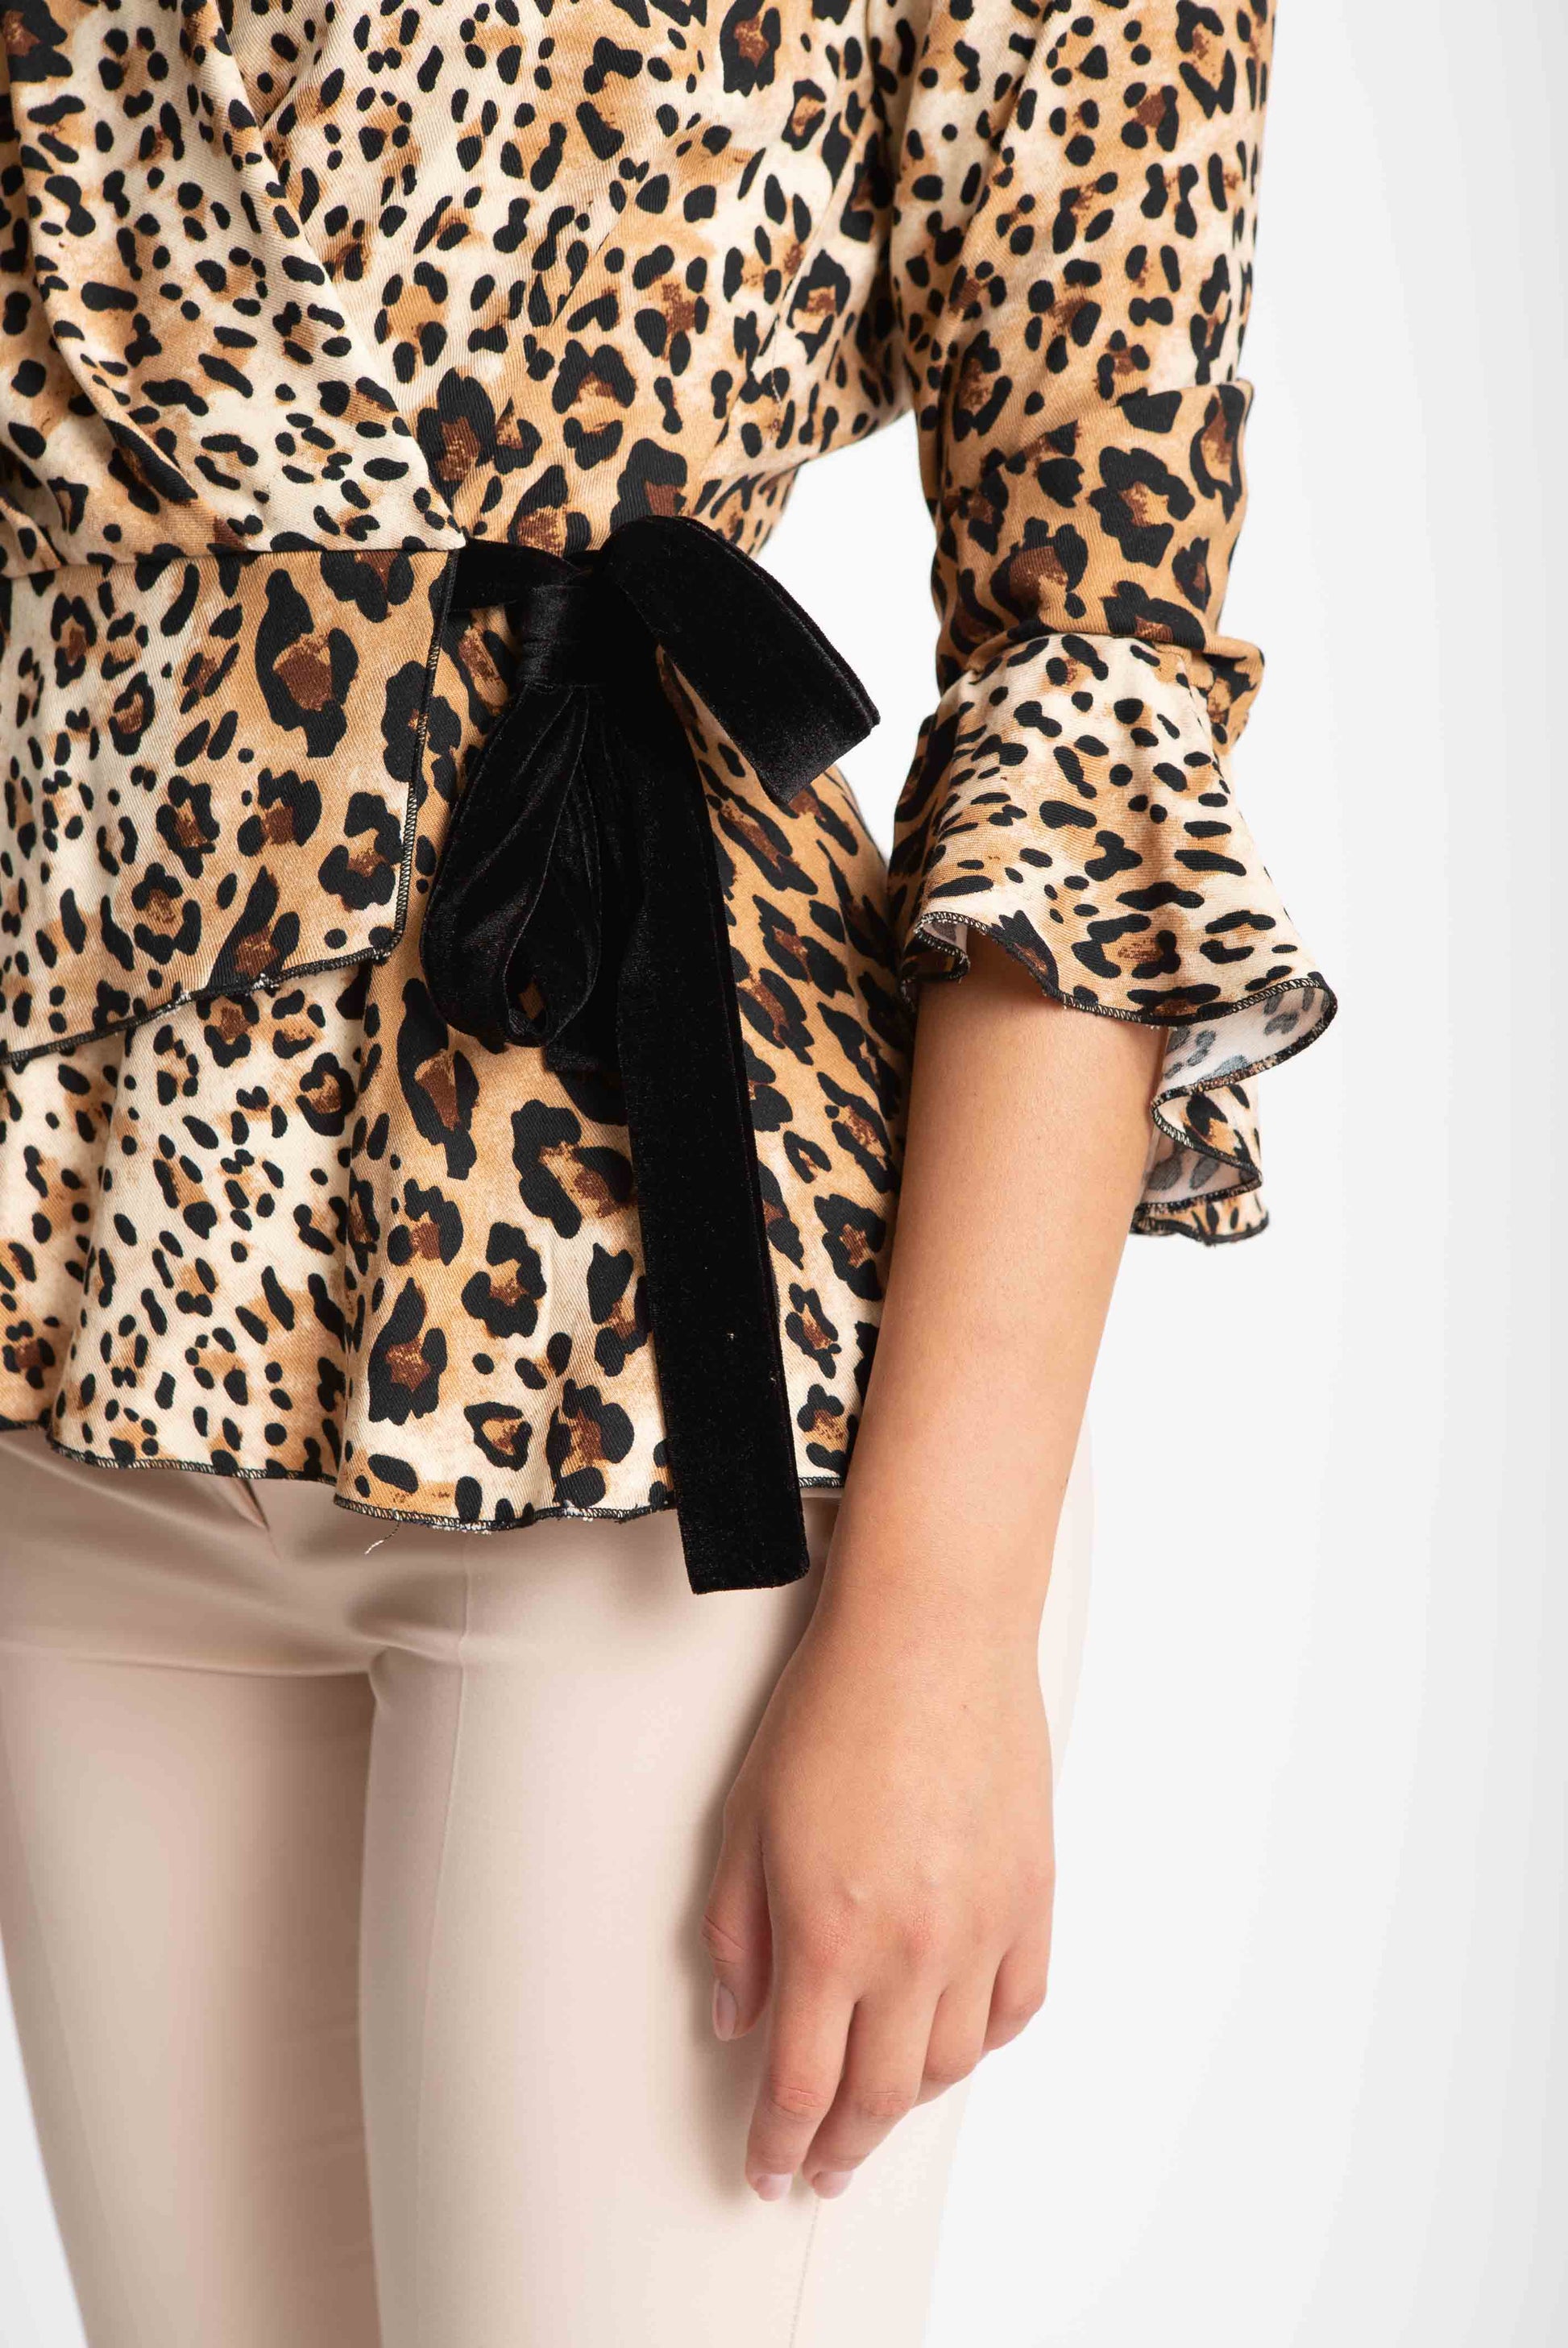 Bluza din viscoza leopard #culori_crem